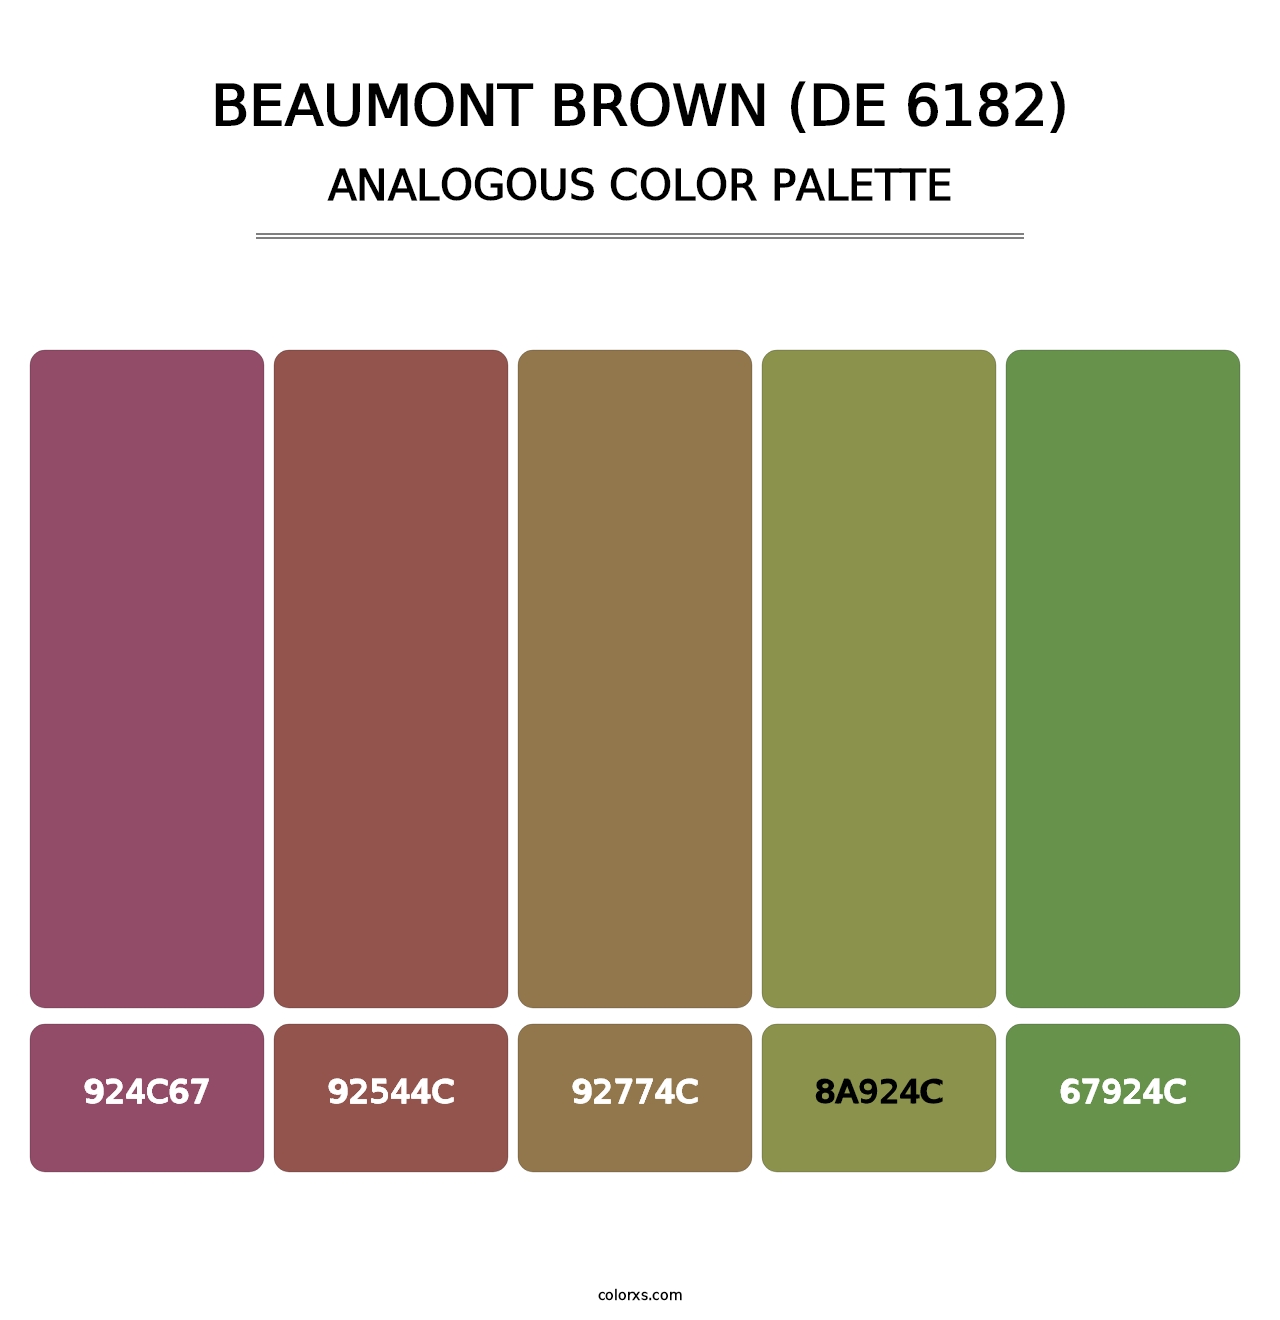 Beaumont Brown (DE 6182) - Analogous Color Palette